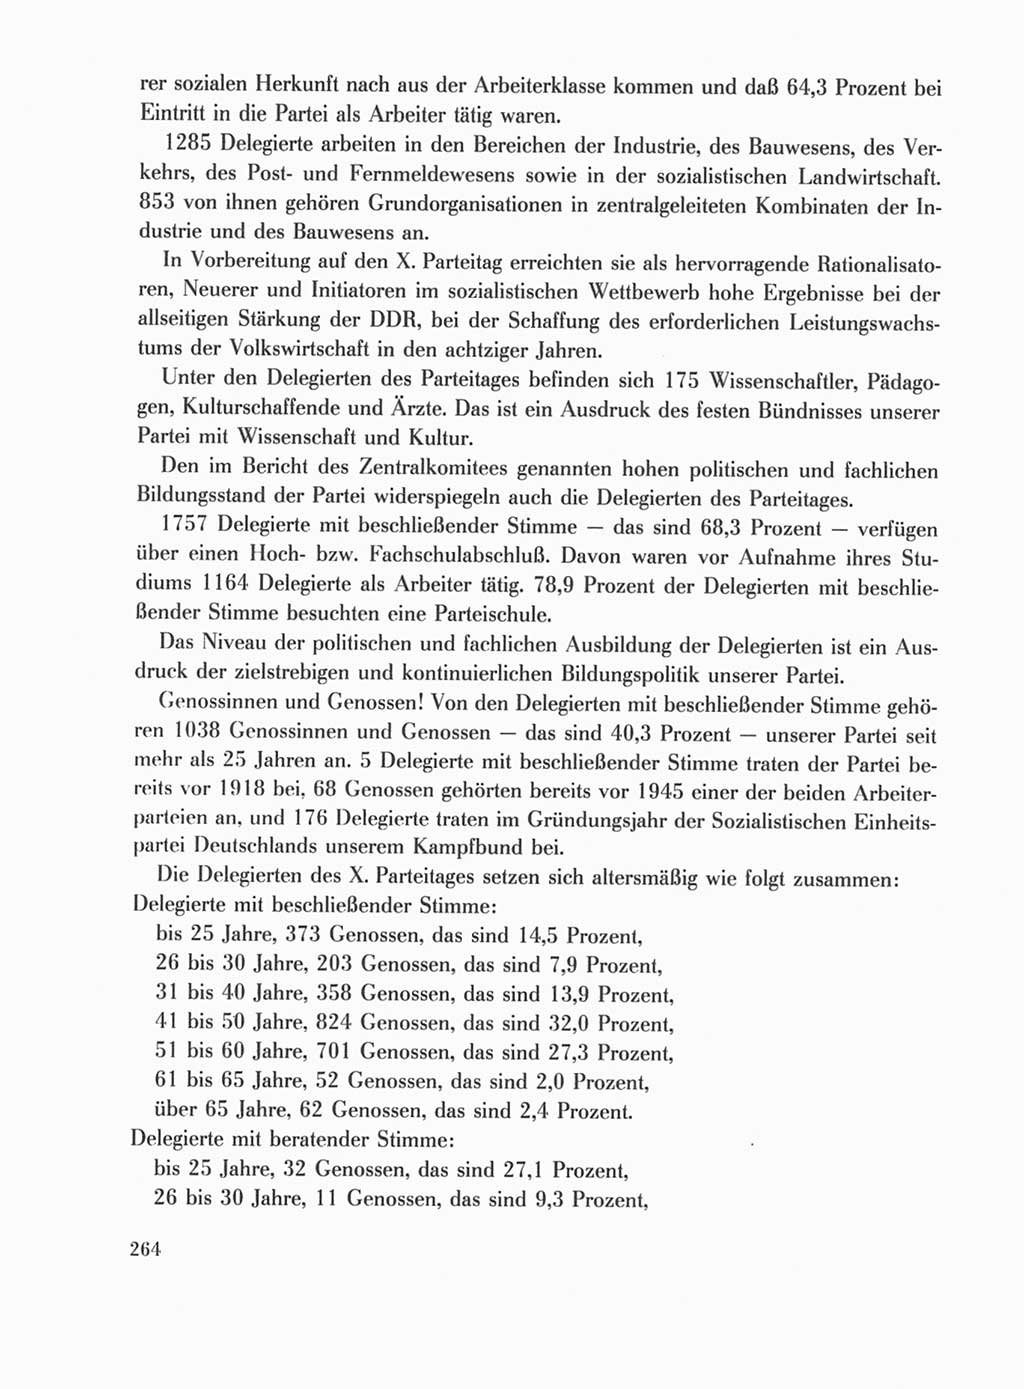 Protokoll der Verhandlungen des Ⅹ. Parteitages der Sozialistischen Einheitspartei Deutschlands (SED) [Deutsche Demokratische Republik (DDR)] 1981, Band 1, Seite 264 (Prot. Verh. Ⅹ. PT SED DDR 1981, Bd. 1, S. 264)